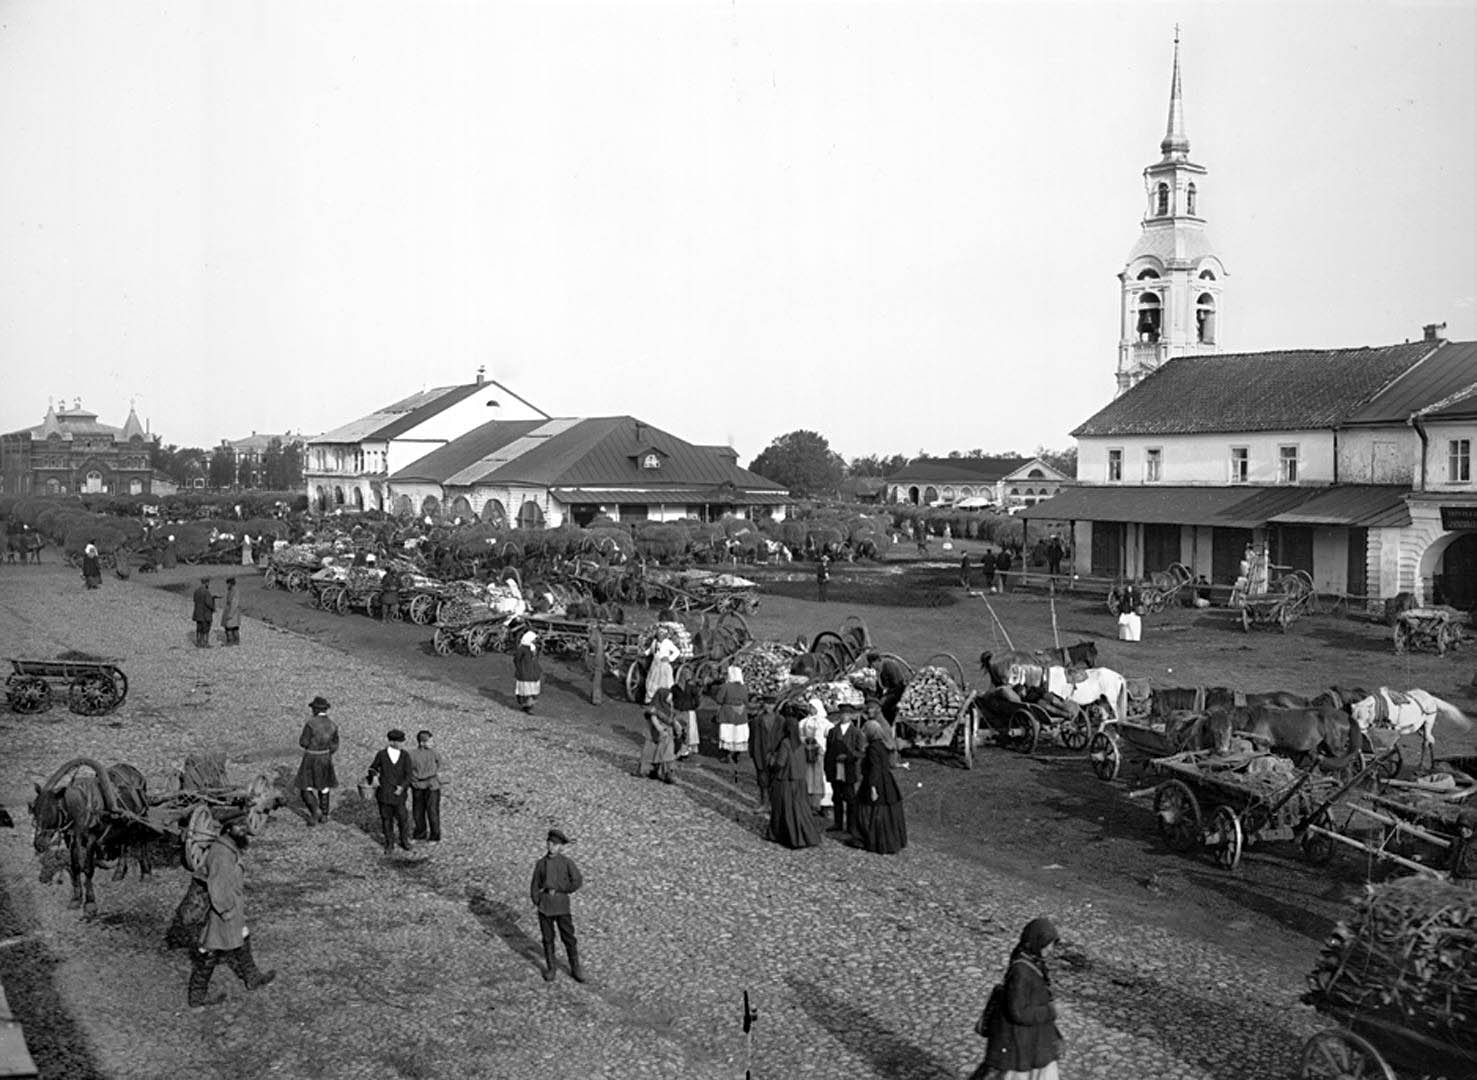 78Общий вид рыночной площади. 1903 г. г. Осташков, Тверская губерния